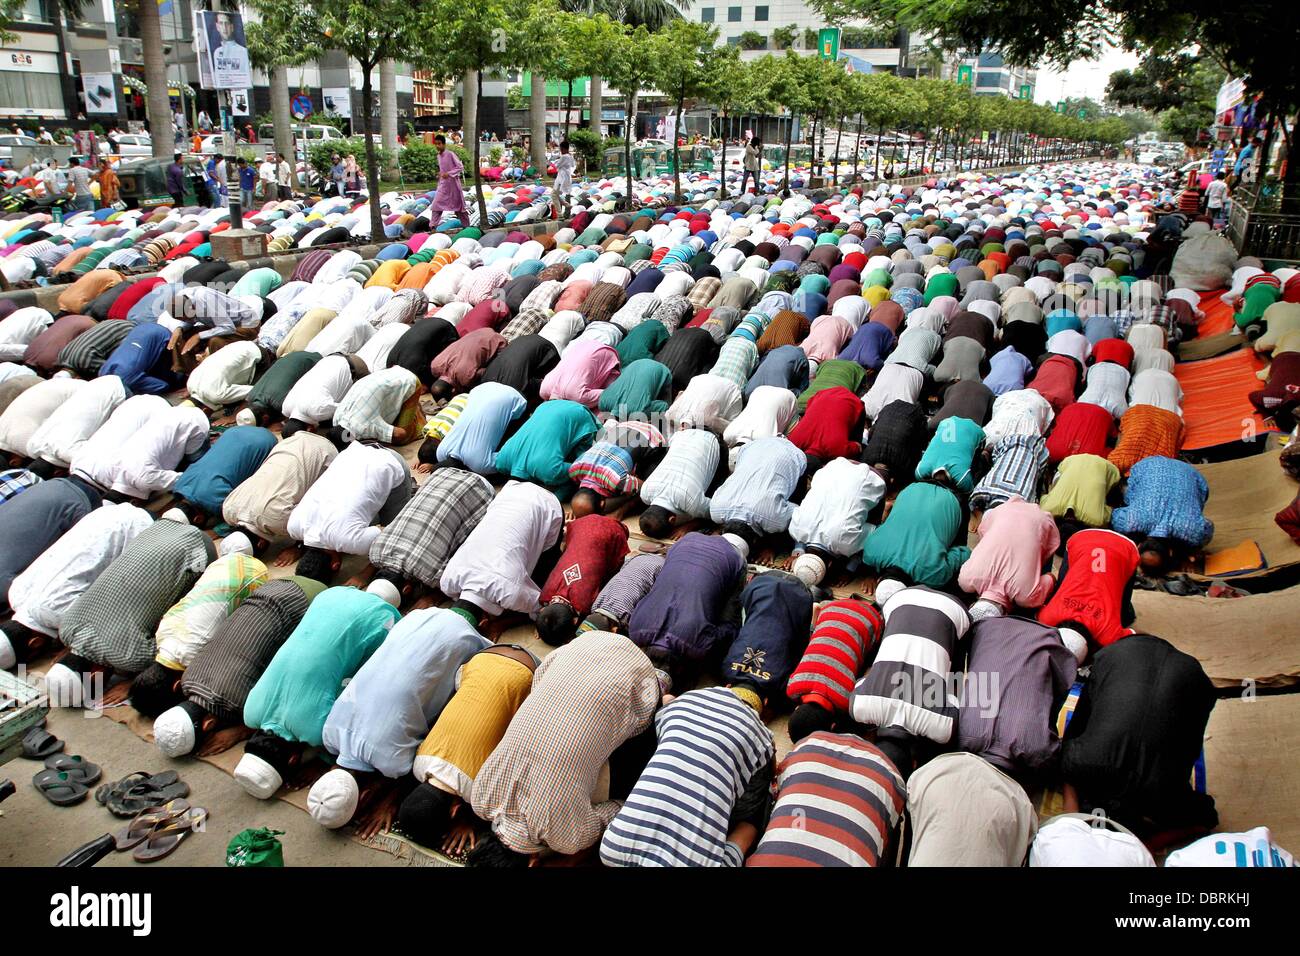 Dhaka, Bangladesh. 2 août 2013 - musulmans dévots offrir la prière de Jummah-tul-Wida (dernier vendredi du Ramadan) sur la rue en face d'une mosquée à Dhaka. Le mois de Ramadan est une période sacrée de jeûne et de prière pour tous les musulmans. Durant le ramadan les musulmans du monde entier rechercher le pardon pour les péchés passés et prier pour guidage. Photo par leadfoto/Alamy Banque D'Images